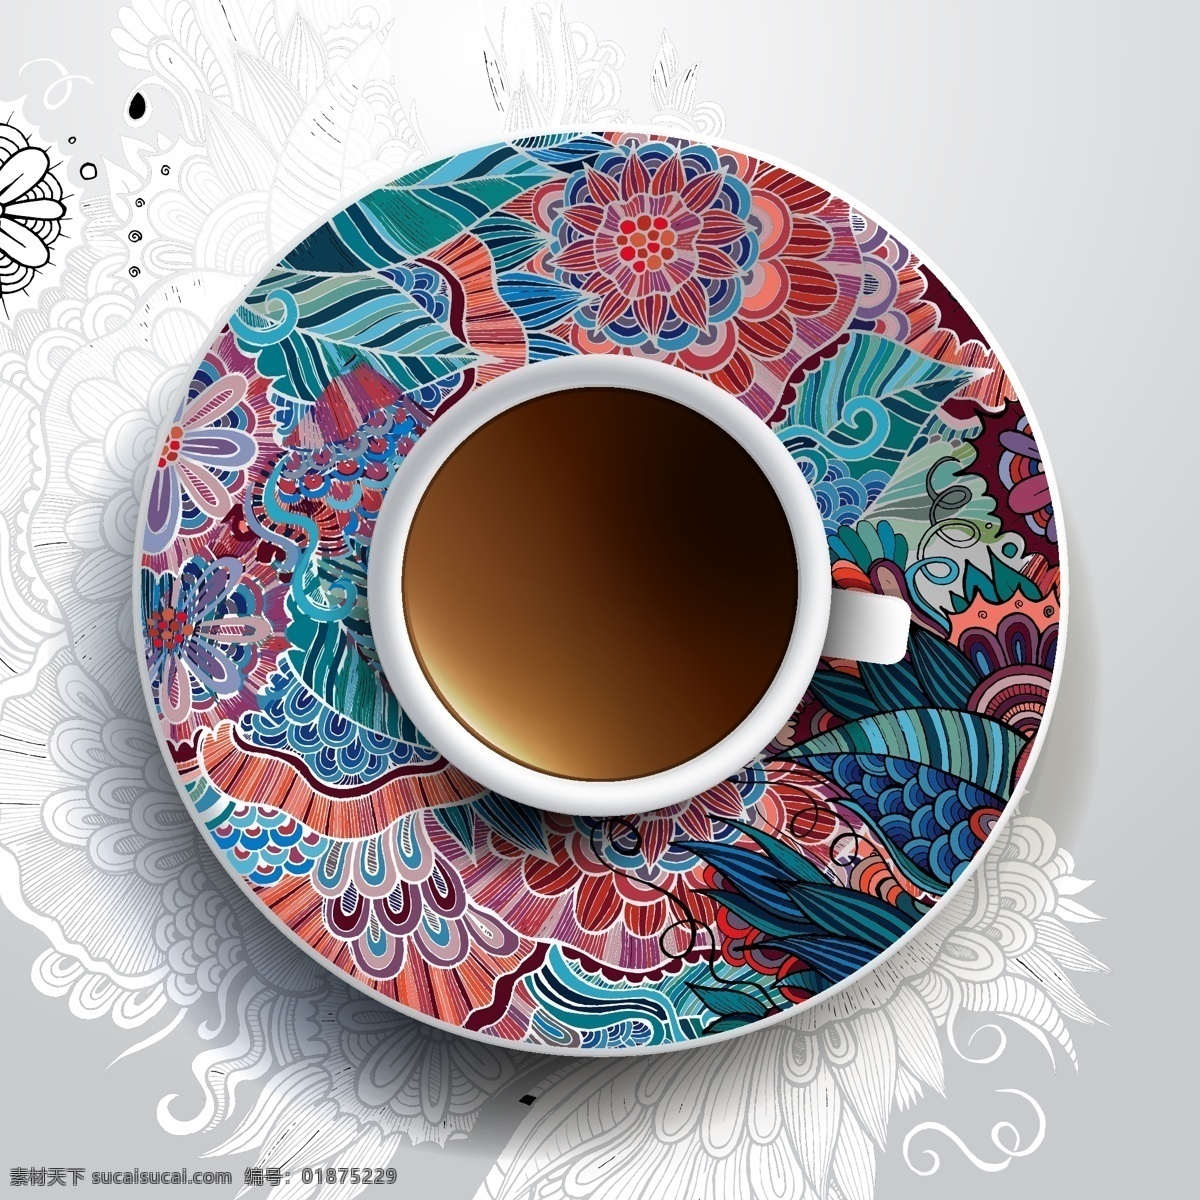 炫彩 花纹 咖啡杯 具 独特 华丽 咖啡 涂鸦 瓷碟 矢量 矢量图 日常生活